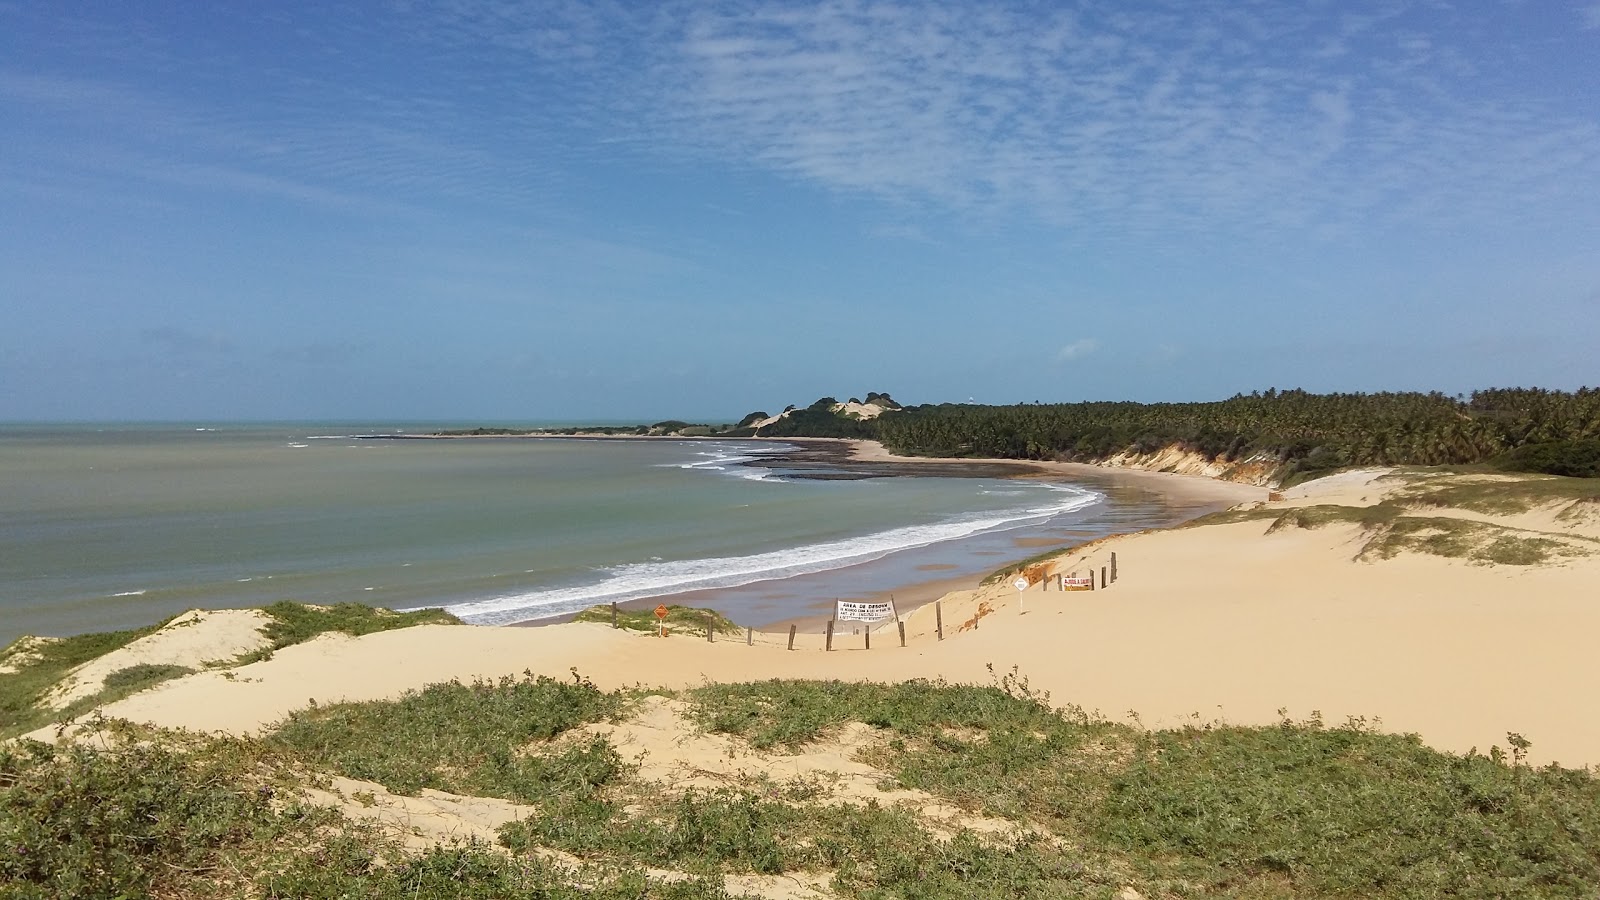 Fotografie cu Plaja Sao Roque cu o suprafață de nisip strălucitor